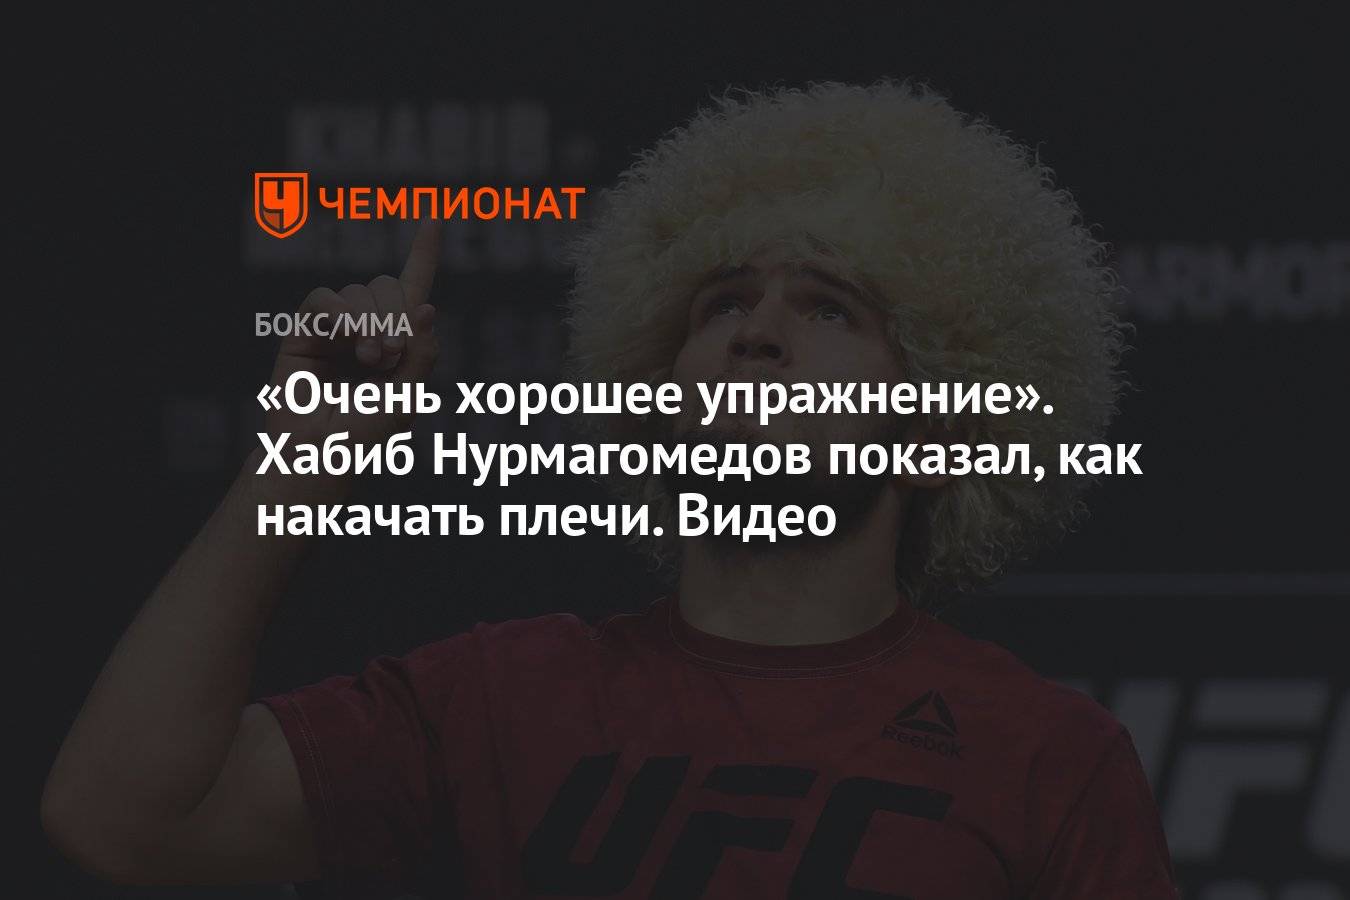 Хабиб нурмагомедов биография, спортивный достижения, первый российский чемпион ufc 2018